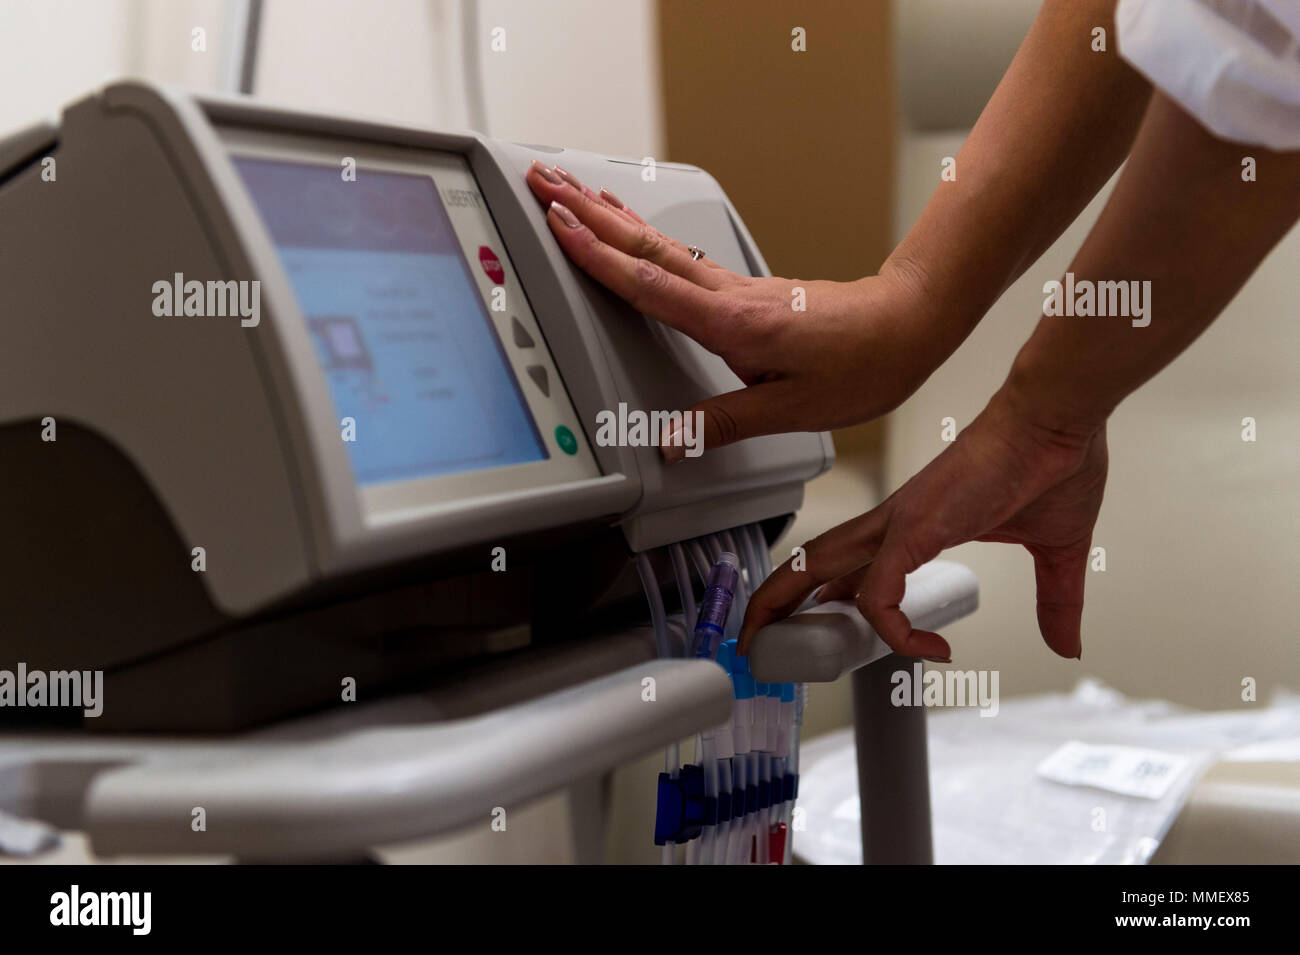 Nayeli Bustillos, un voluntario enfermera registrada, prepara una máquina  de diálisis de Fresenius Medical Care en Vega Alta, Puerto Rico, el 31 de  octubre, 2017. Casi 100 enfermeras de diálisis renal Fresenius